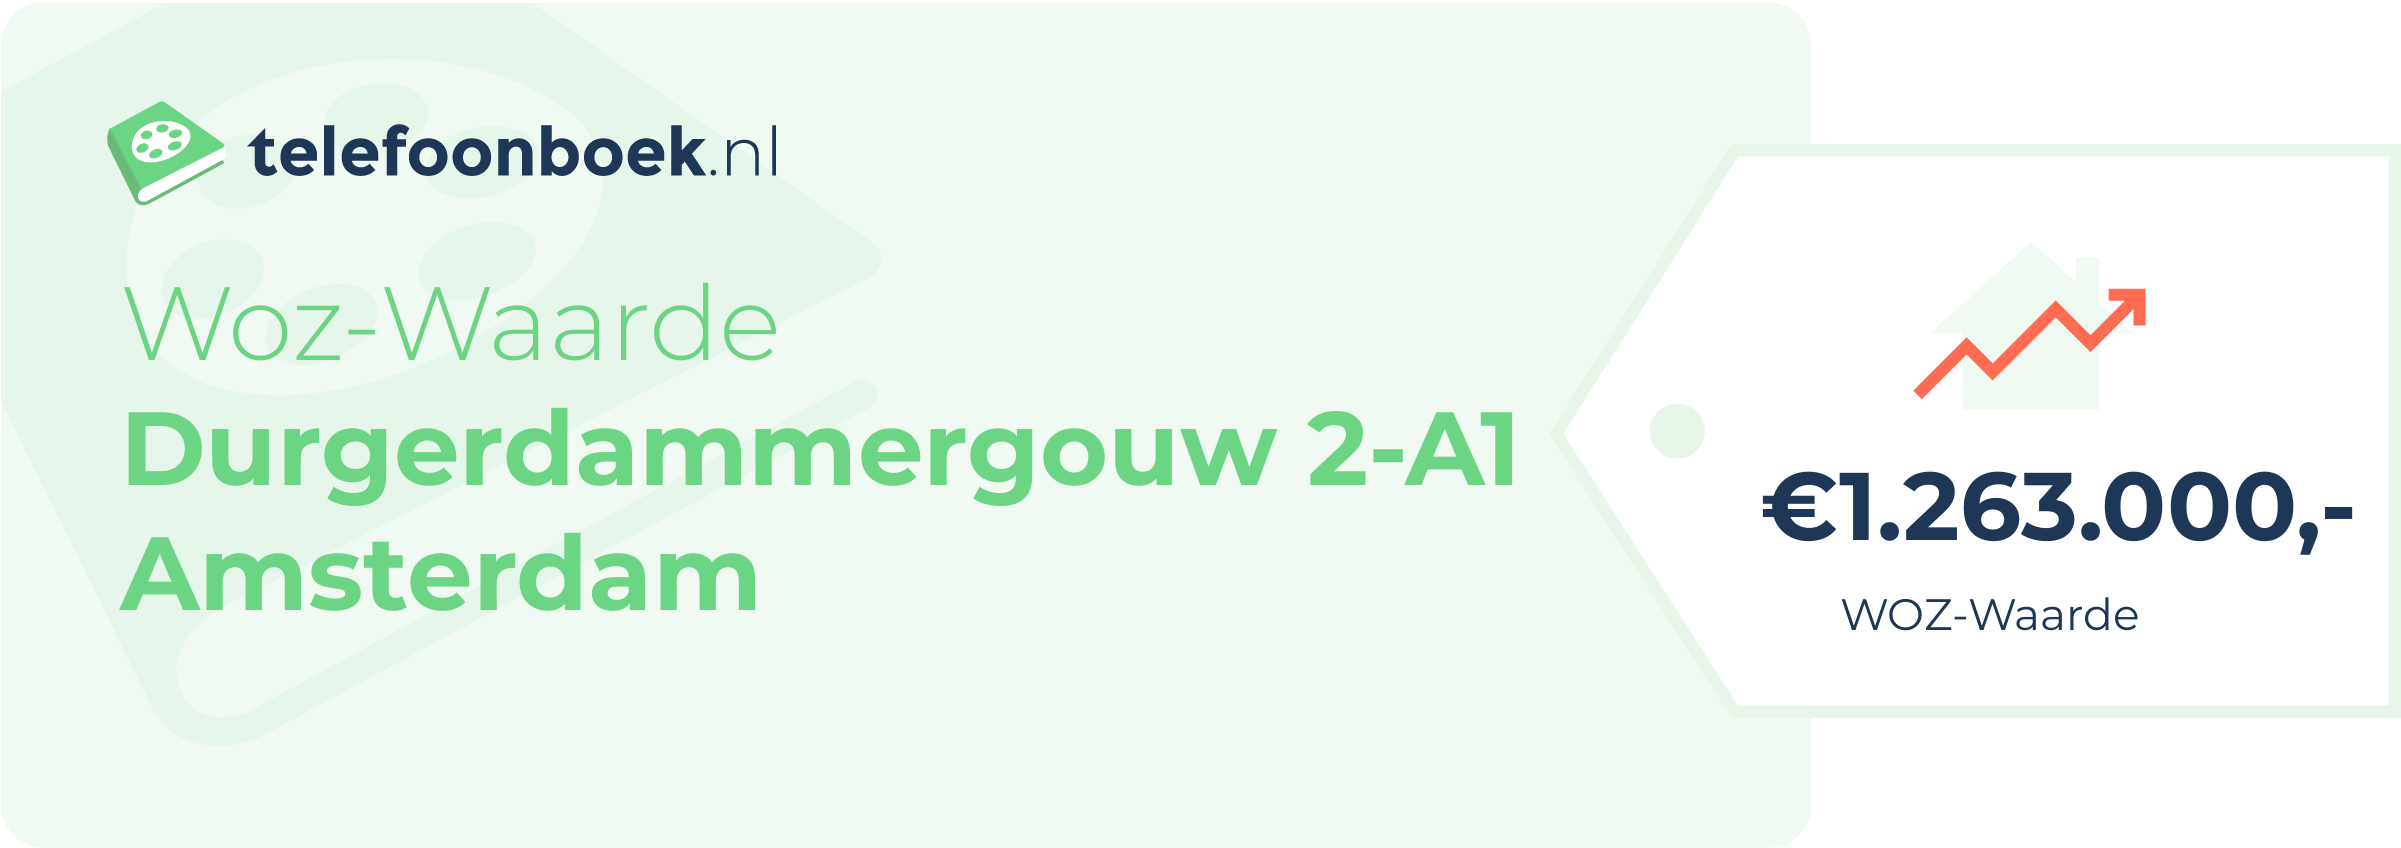 WOZ-waarde Durgerdammergouw 2-A1 Amsterdam